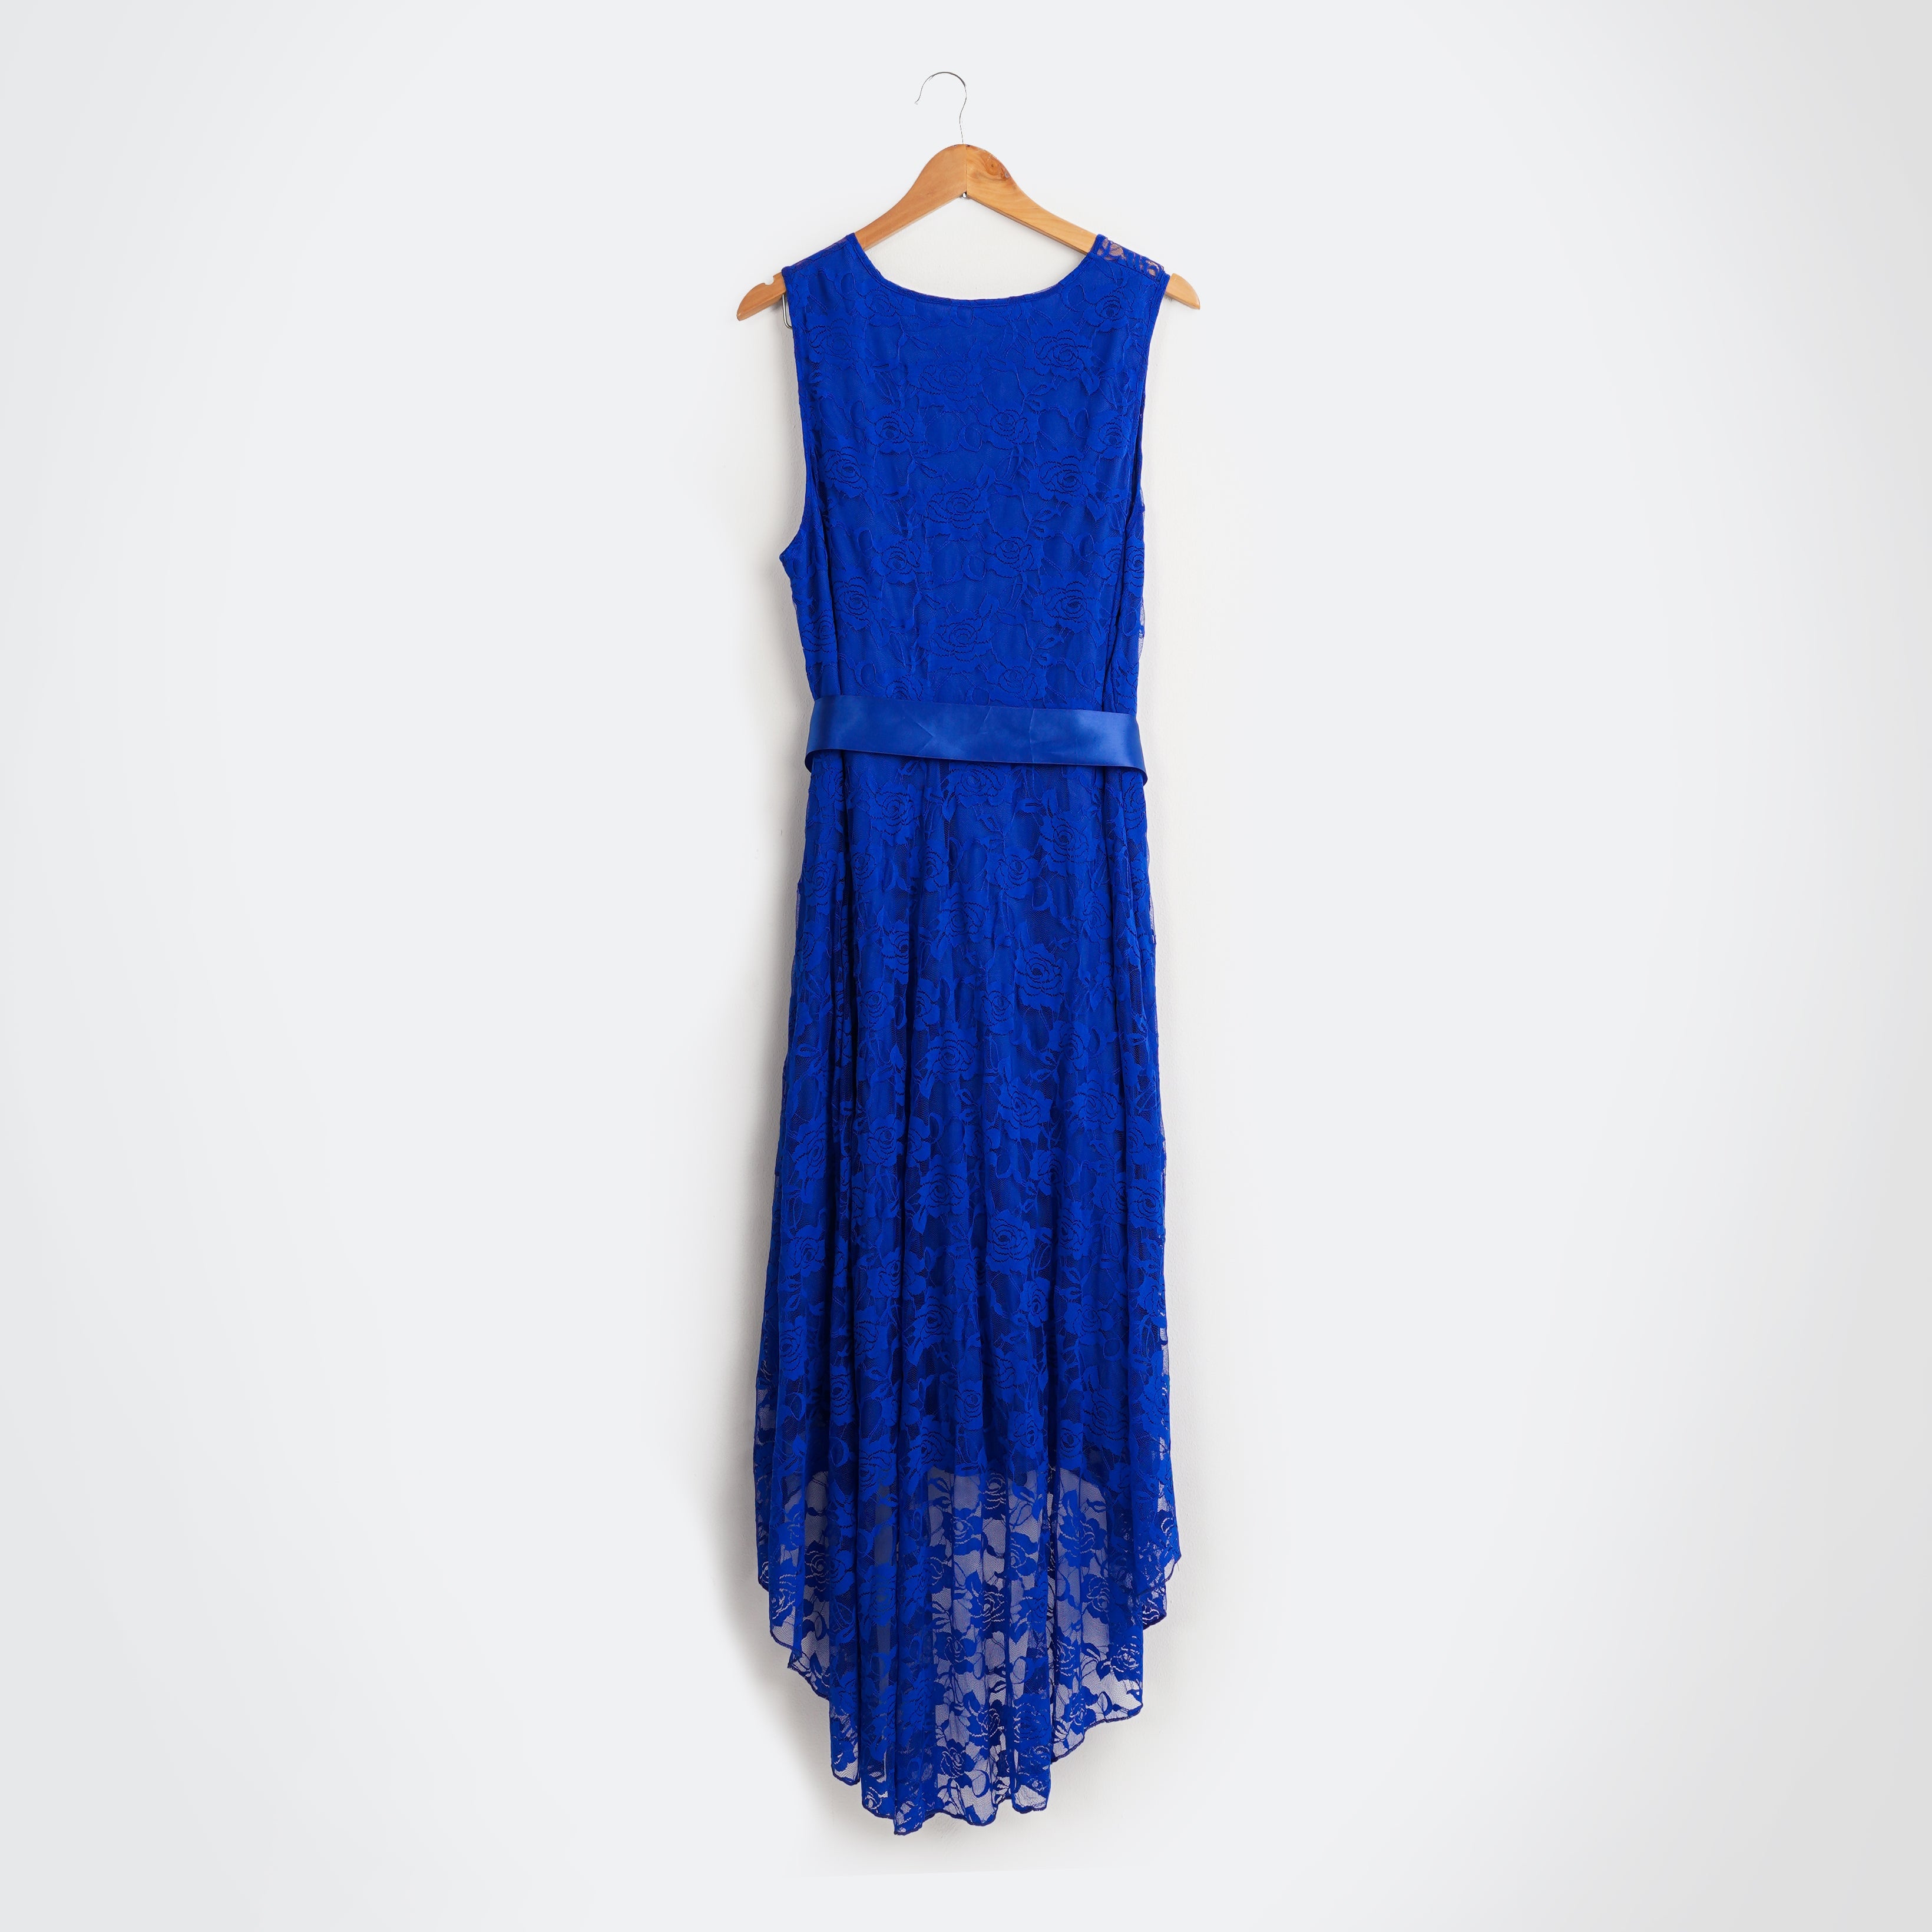 Long patterned Dress with Waist Belt - Marca Deals - Shein